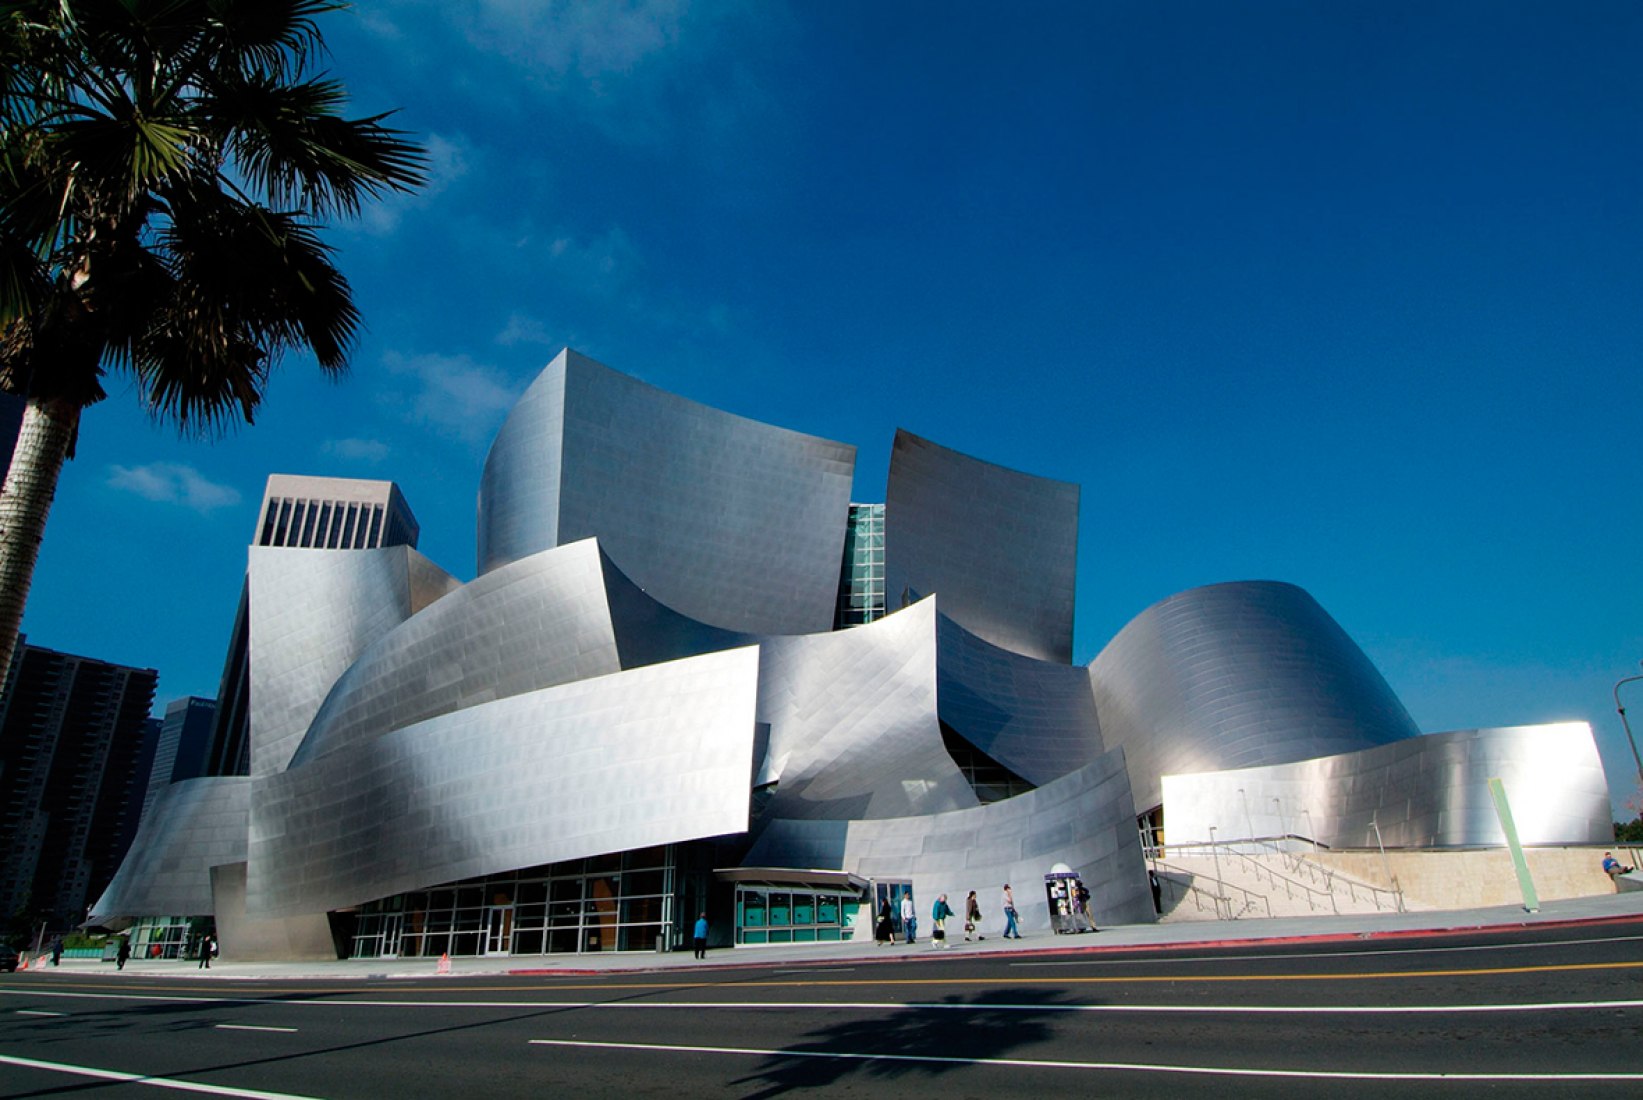 Архитектура зданий театров. Лос Анджелес концертный зал Уолта Диснея. Фрэнк Гери концертный зал Уолта Диснея. Концертный зал Фрэнк Гери Лос Анджелес. Концертного зала Уолта Диснея в Лос-Анджелесе.